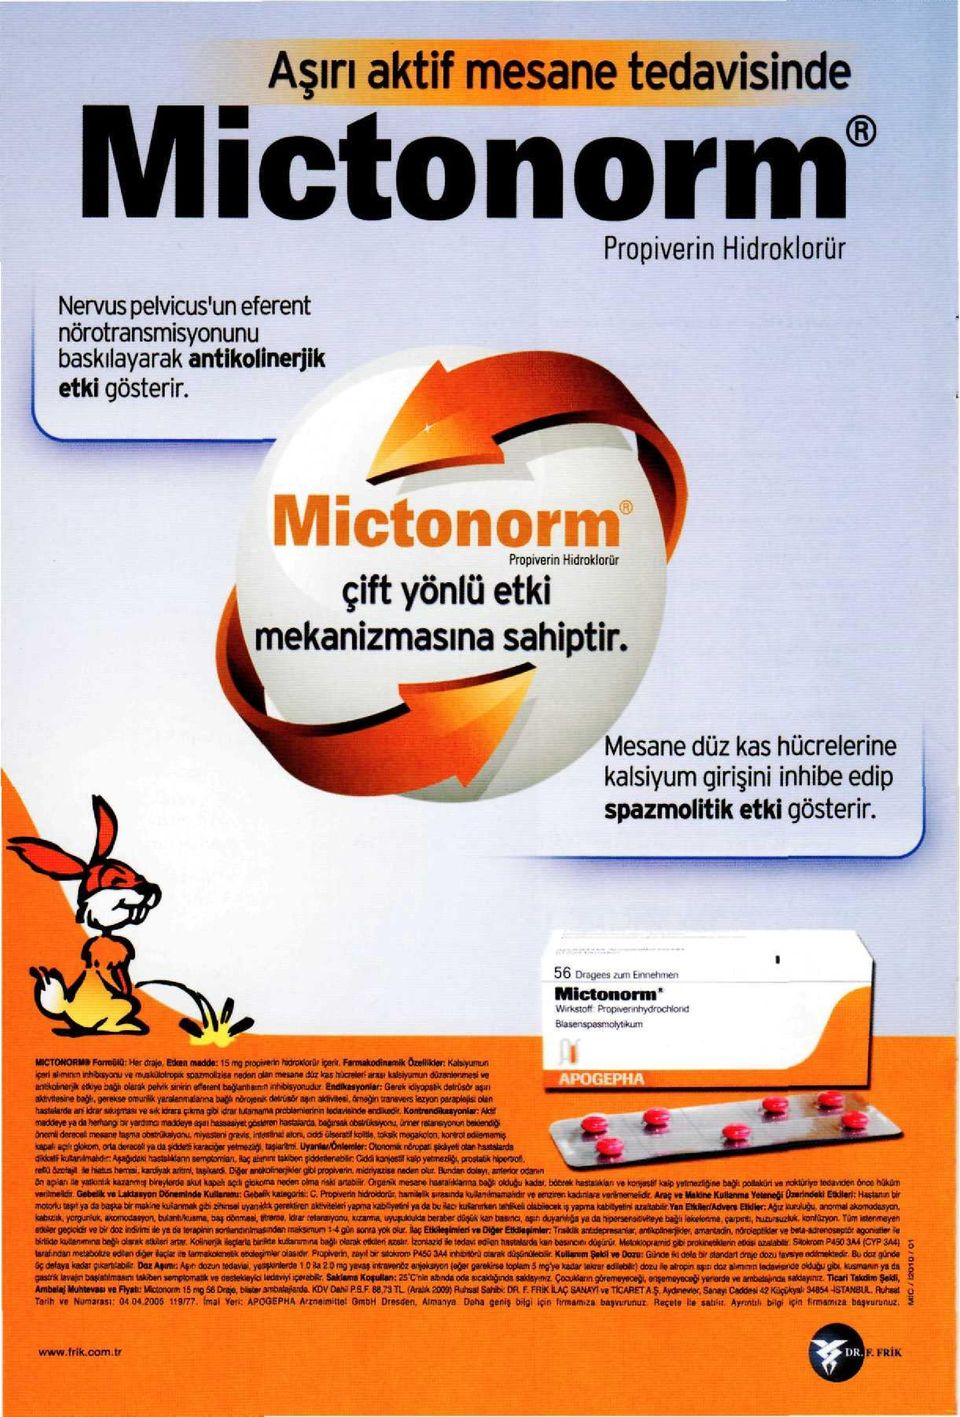 56 Dıagees eunı Eıonehmen Mictonorm" VVırkstoH PropıverınhydfOcNorıd Btasenspasrootytıkurn MİCTONORM» Formülü: Her draje Etken madde: 15 mg proprvenn hıdroktorûr içerir.